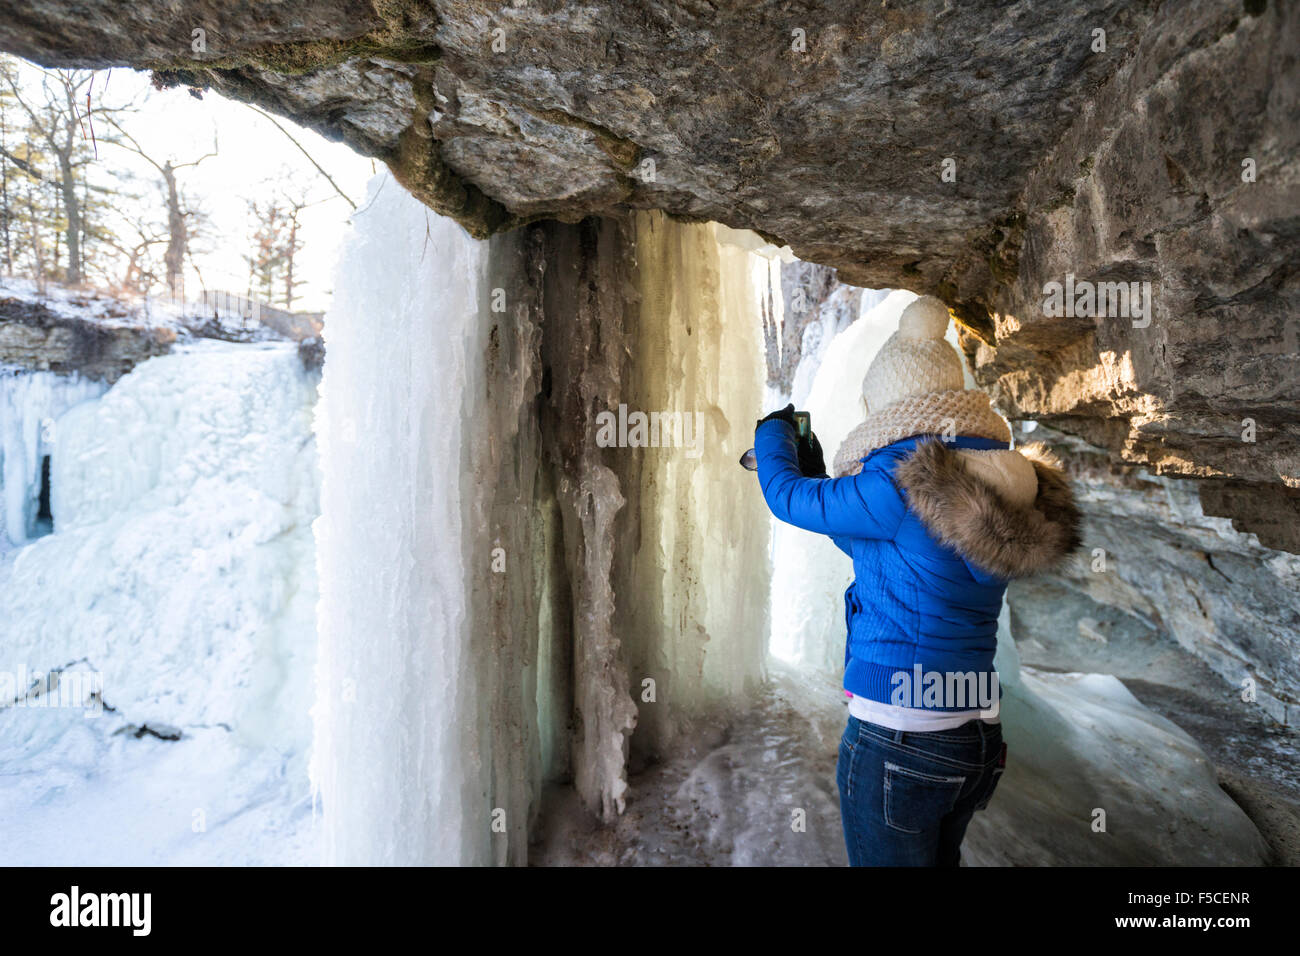 Caucasian donna in abiti invernali scatta una foto del surgelato cascate Minnehaha in inverno, Minneapolis, MN, Stati Uniti d'America Foto Stock